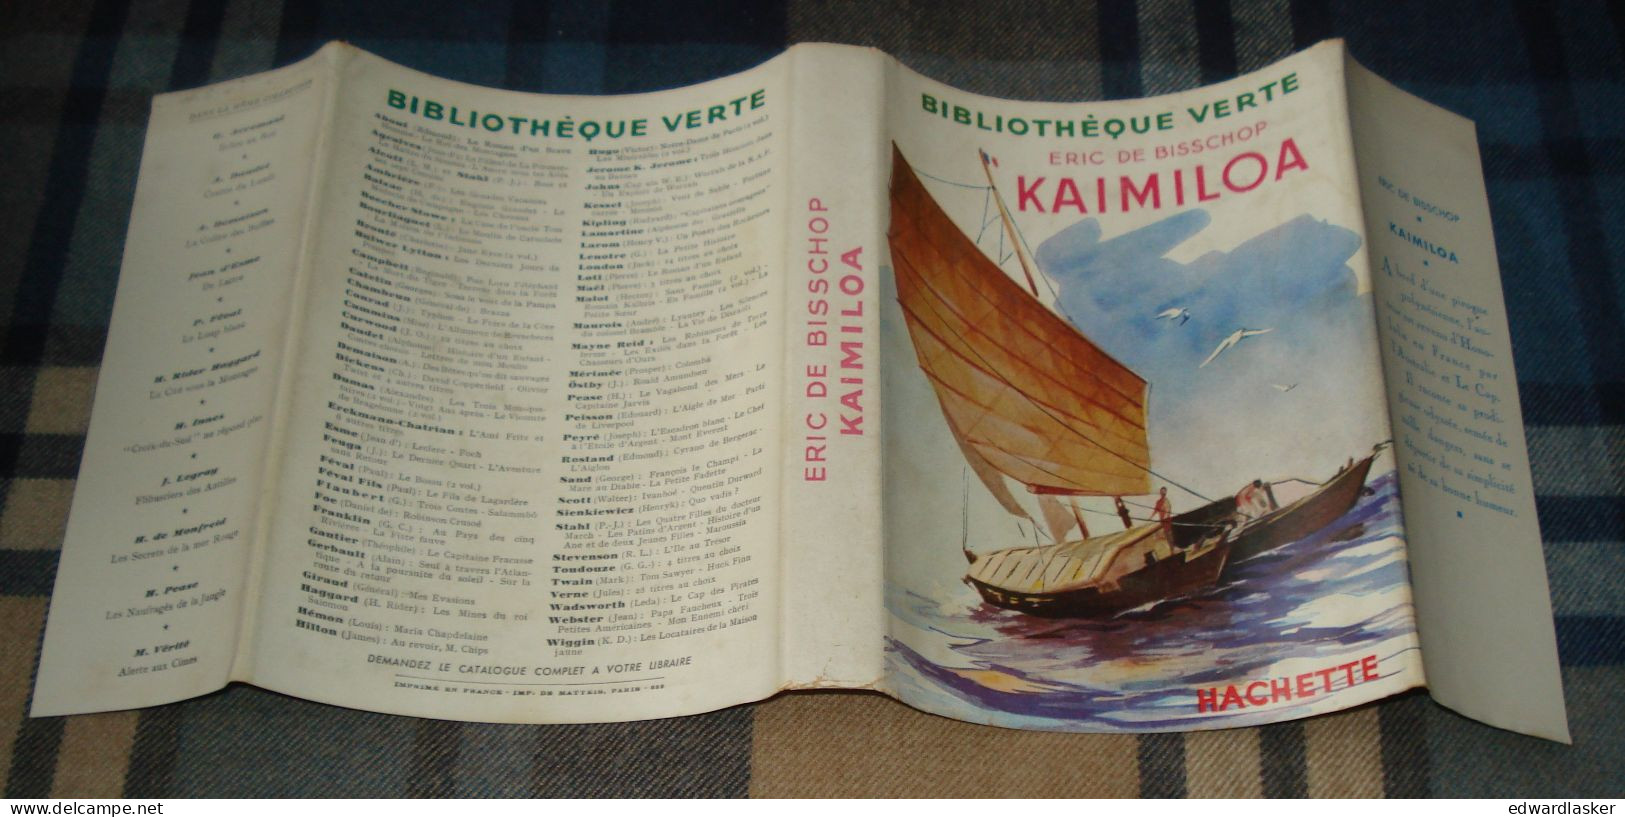 BIBLIOTHEQUE VERTE : Kaimiloa /Éric de Bisschop - jaquette 1953 - Paul Durand